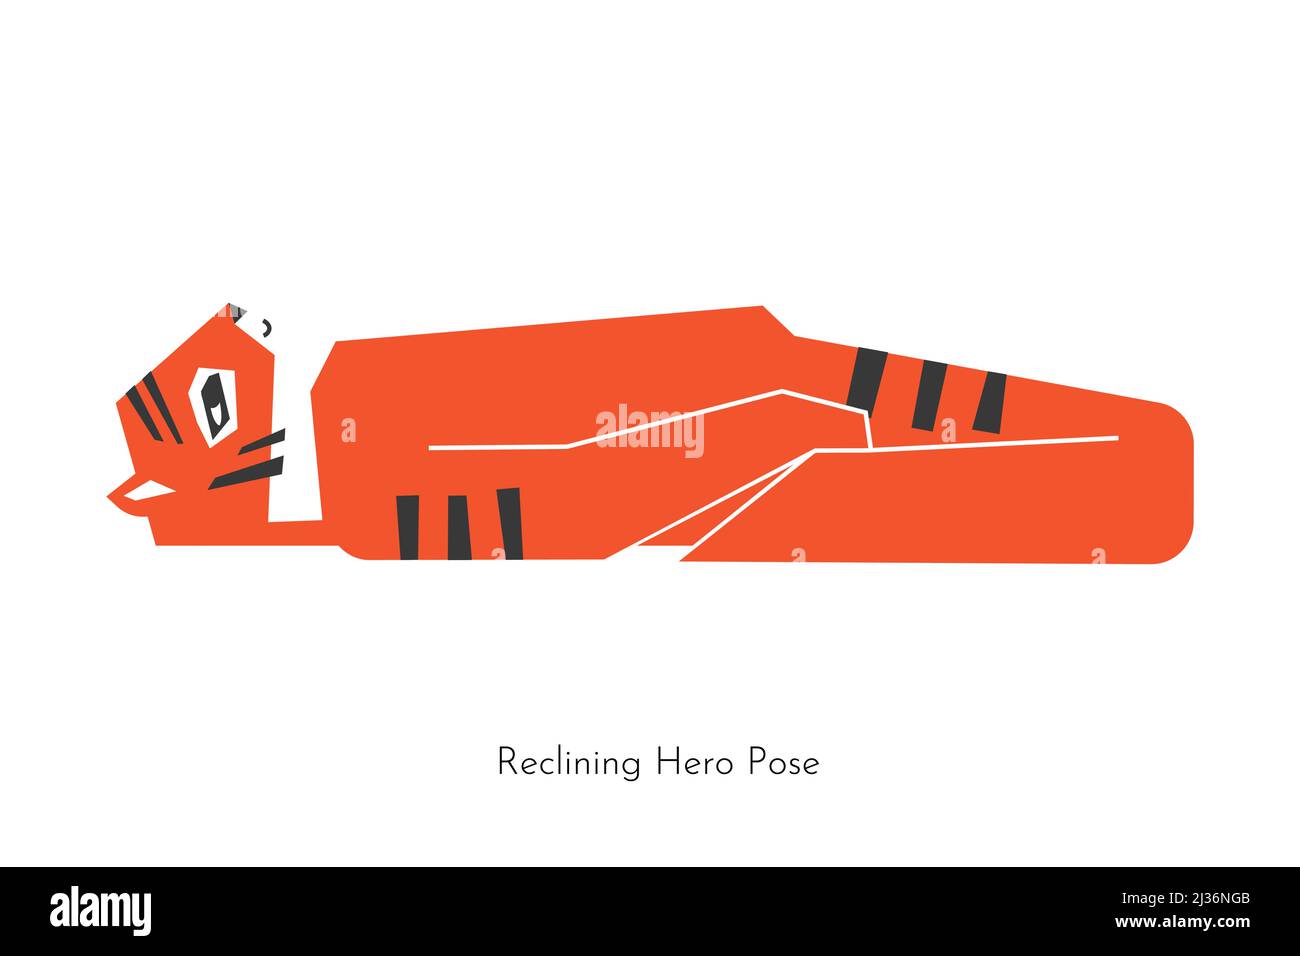 Vecteur concept avec dessin animé animal personnage apprentissage pratique de yoga - Sutta Virasana. Le tigre indochois fait de la posture de héros couché. Illustration plate de Illustration de Vecteur